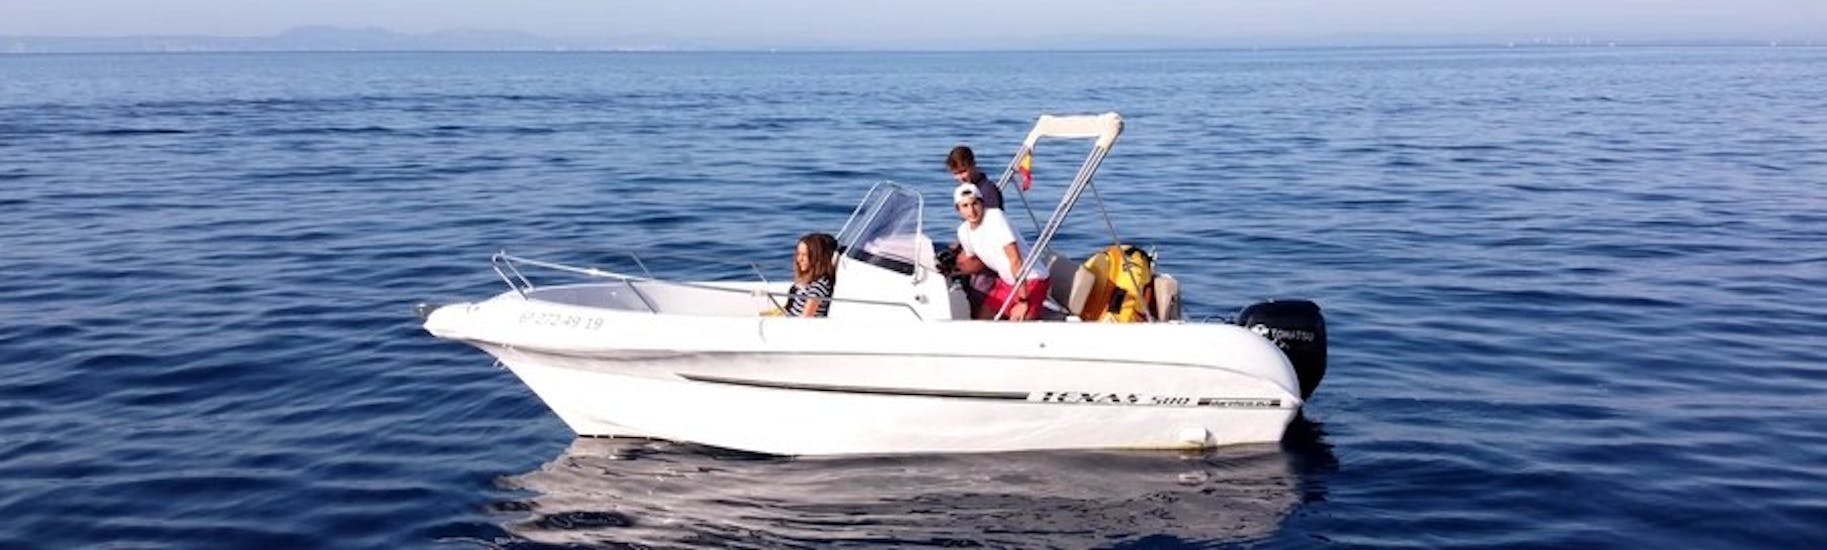 La moderna lancha TEXAS 580 con un grupo de participantes divirtiéndose mientras navegan por las aguas turquesas de la bahía de roses durante un alquiler de barco en la Costa Brava para hasta 6 personas con licencia con Maxi Boats.